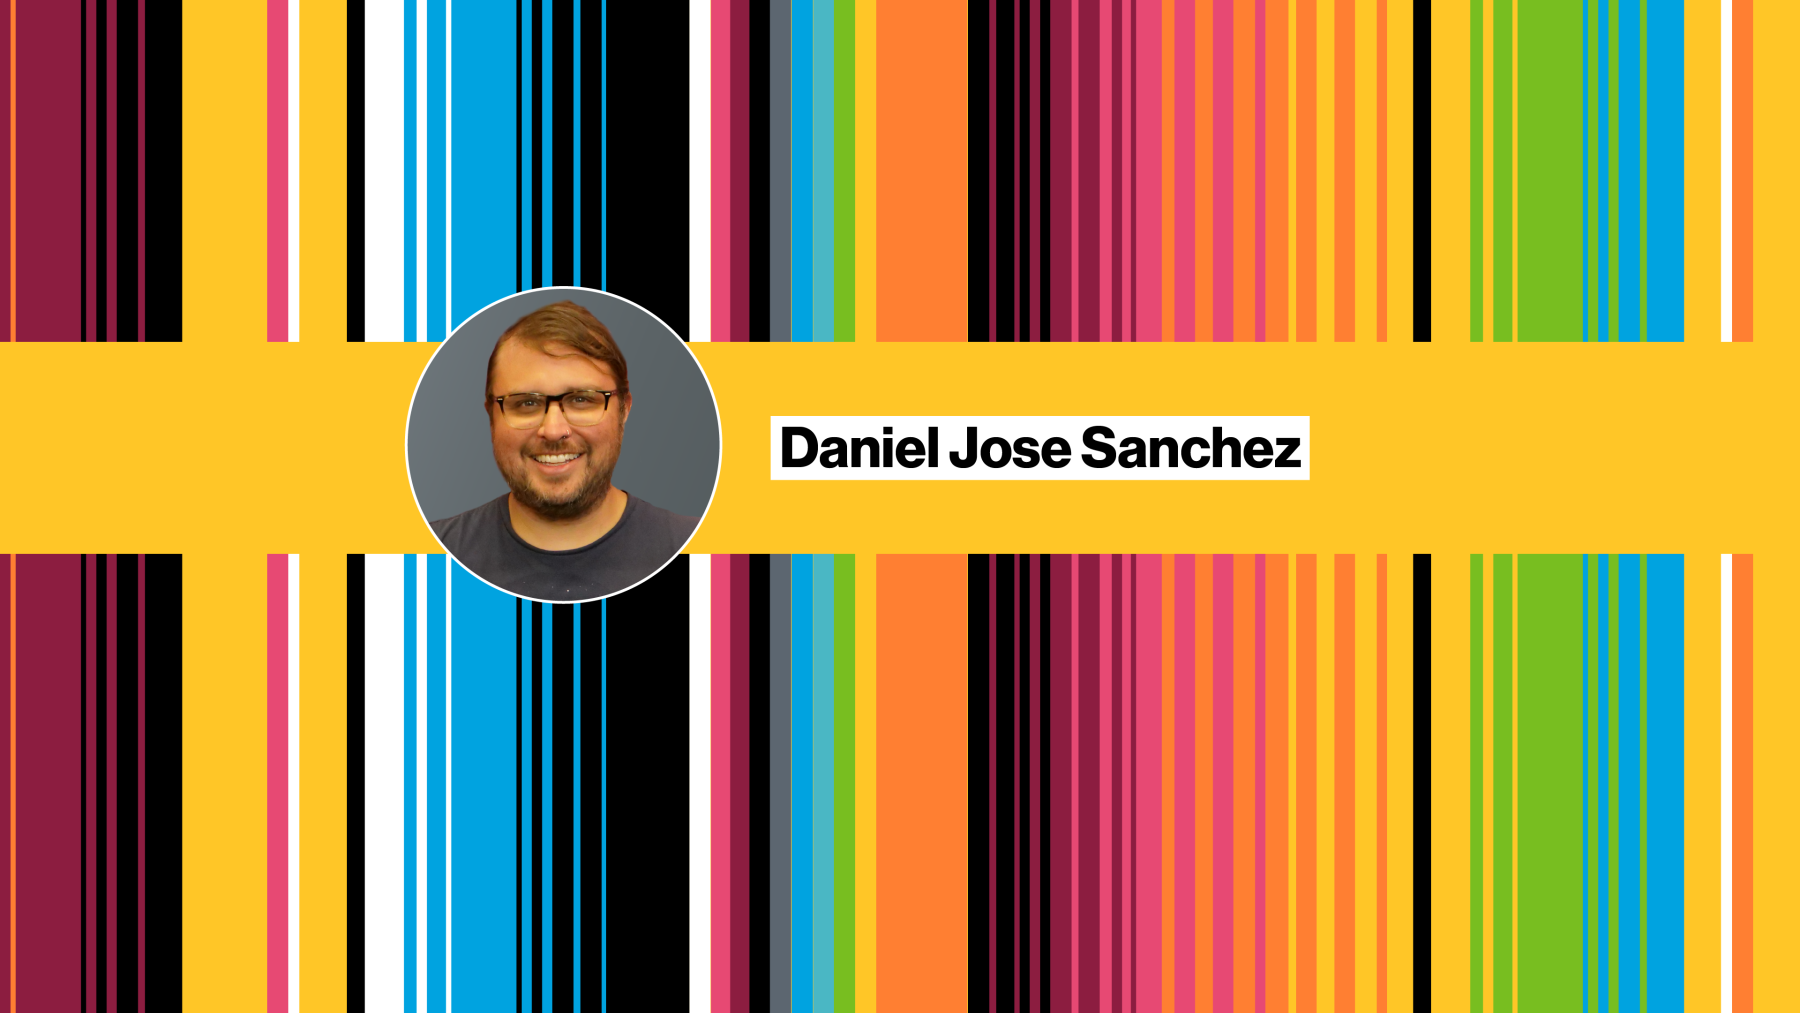 Daniel Jose Sanchez